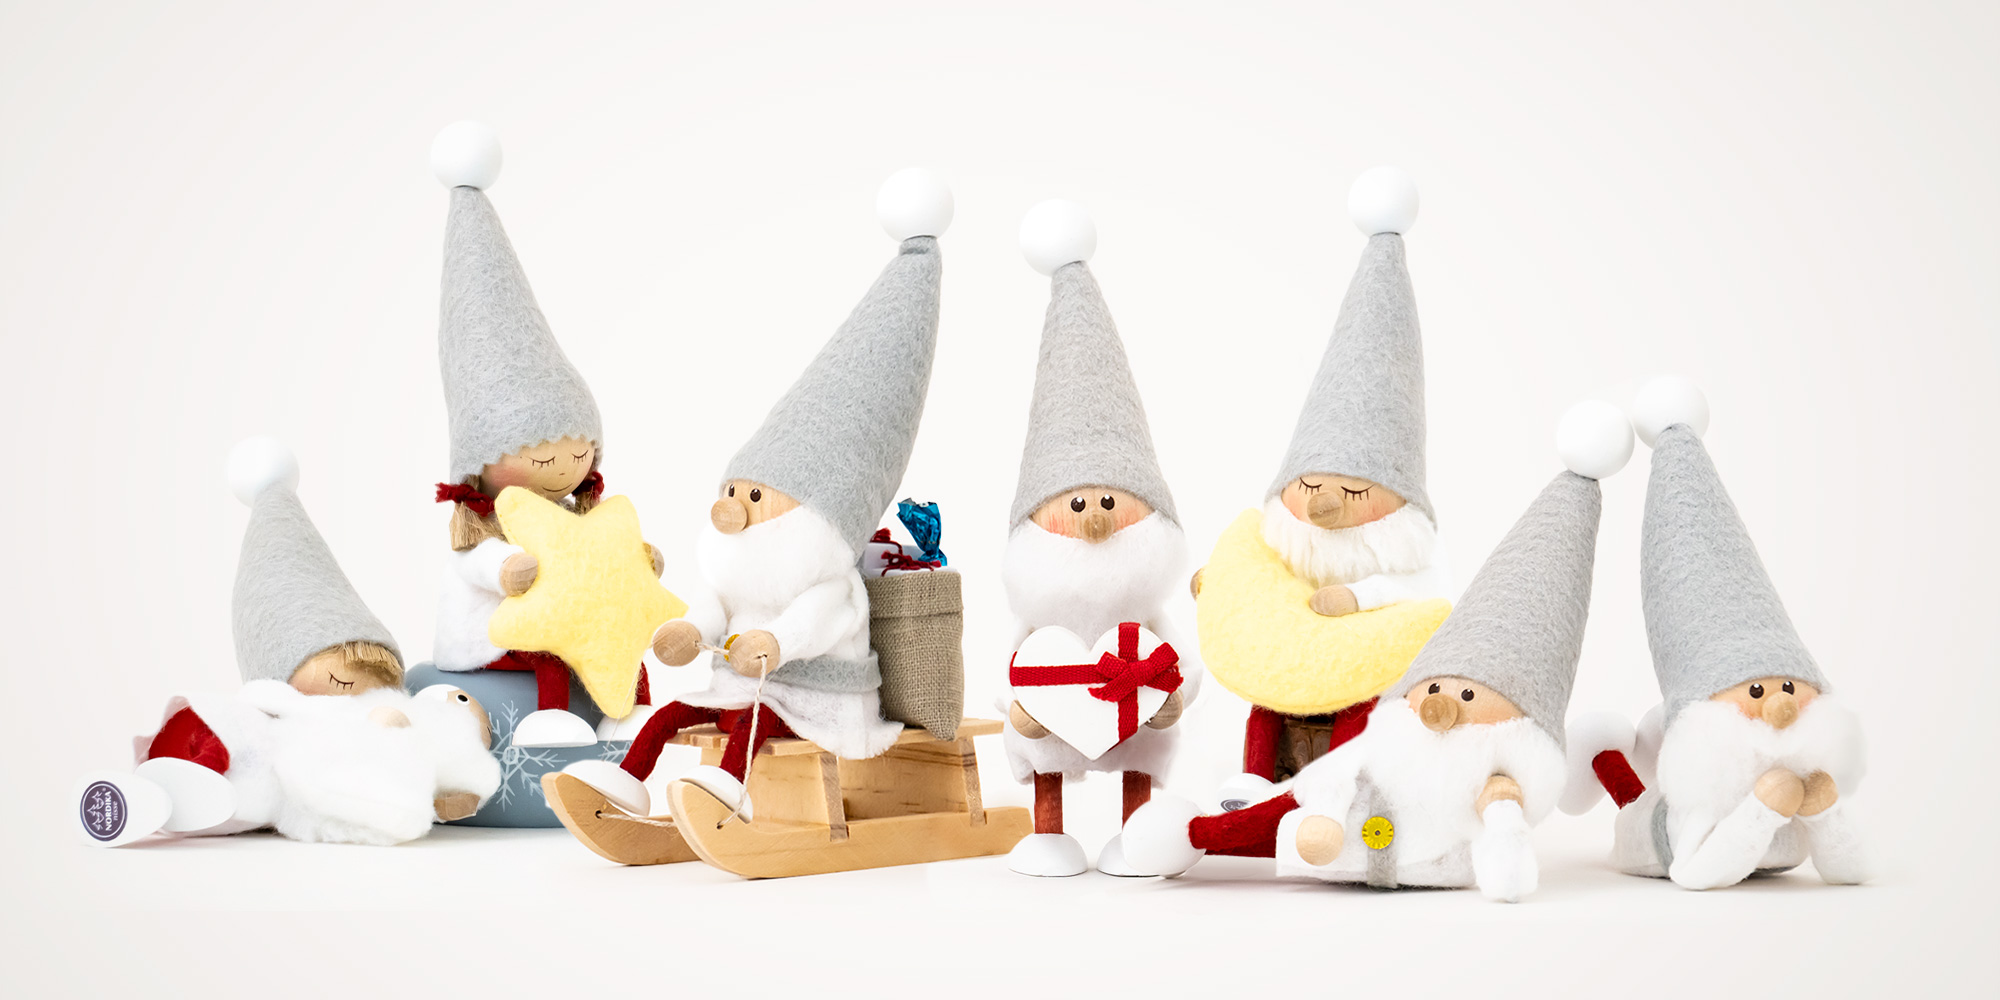 ノルディカニッセ 木製人形 クリスマス サイレントナイトシリーズの人形を並べた状態